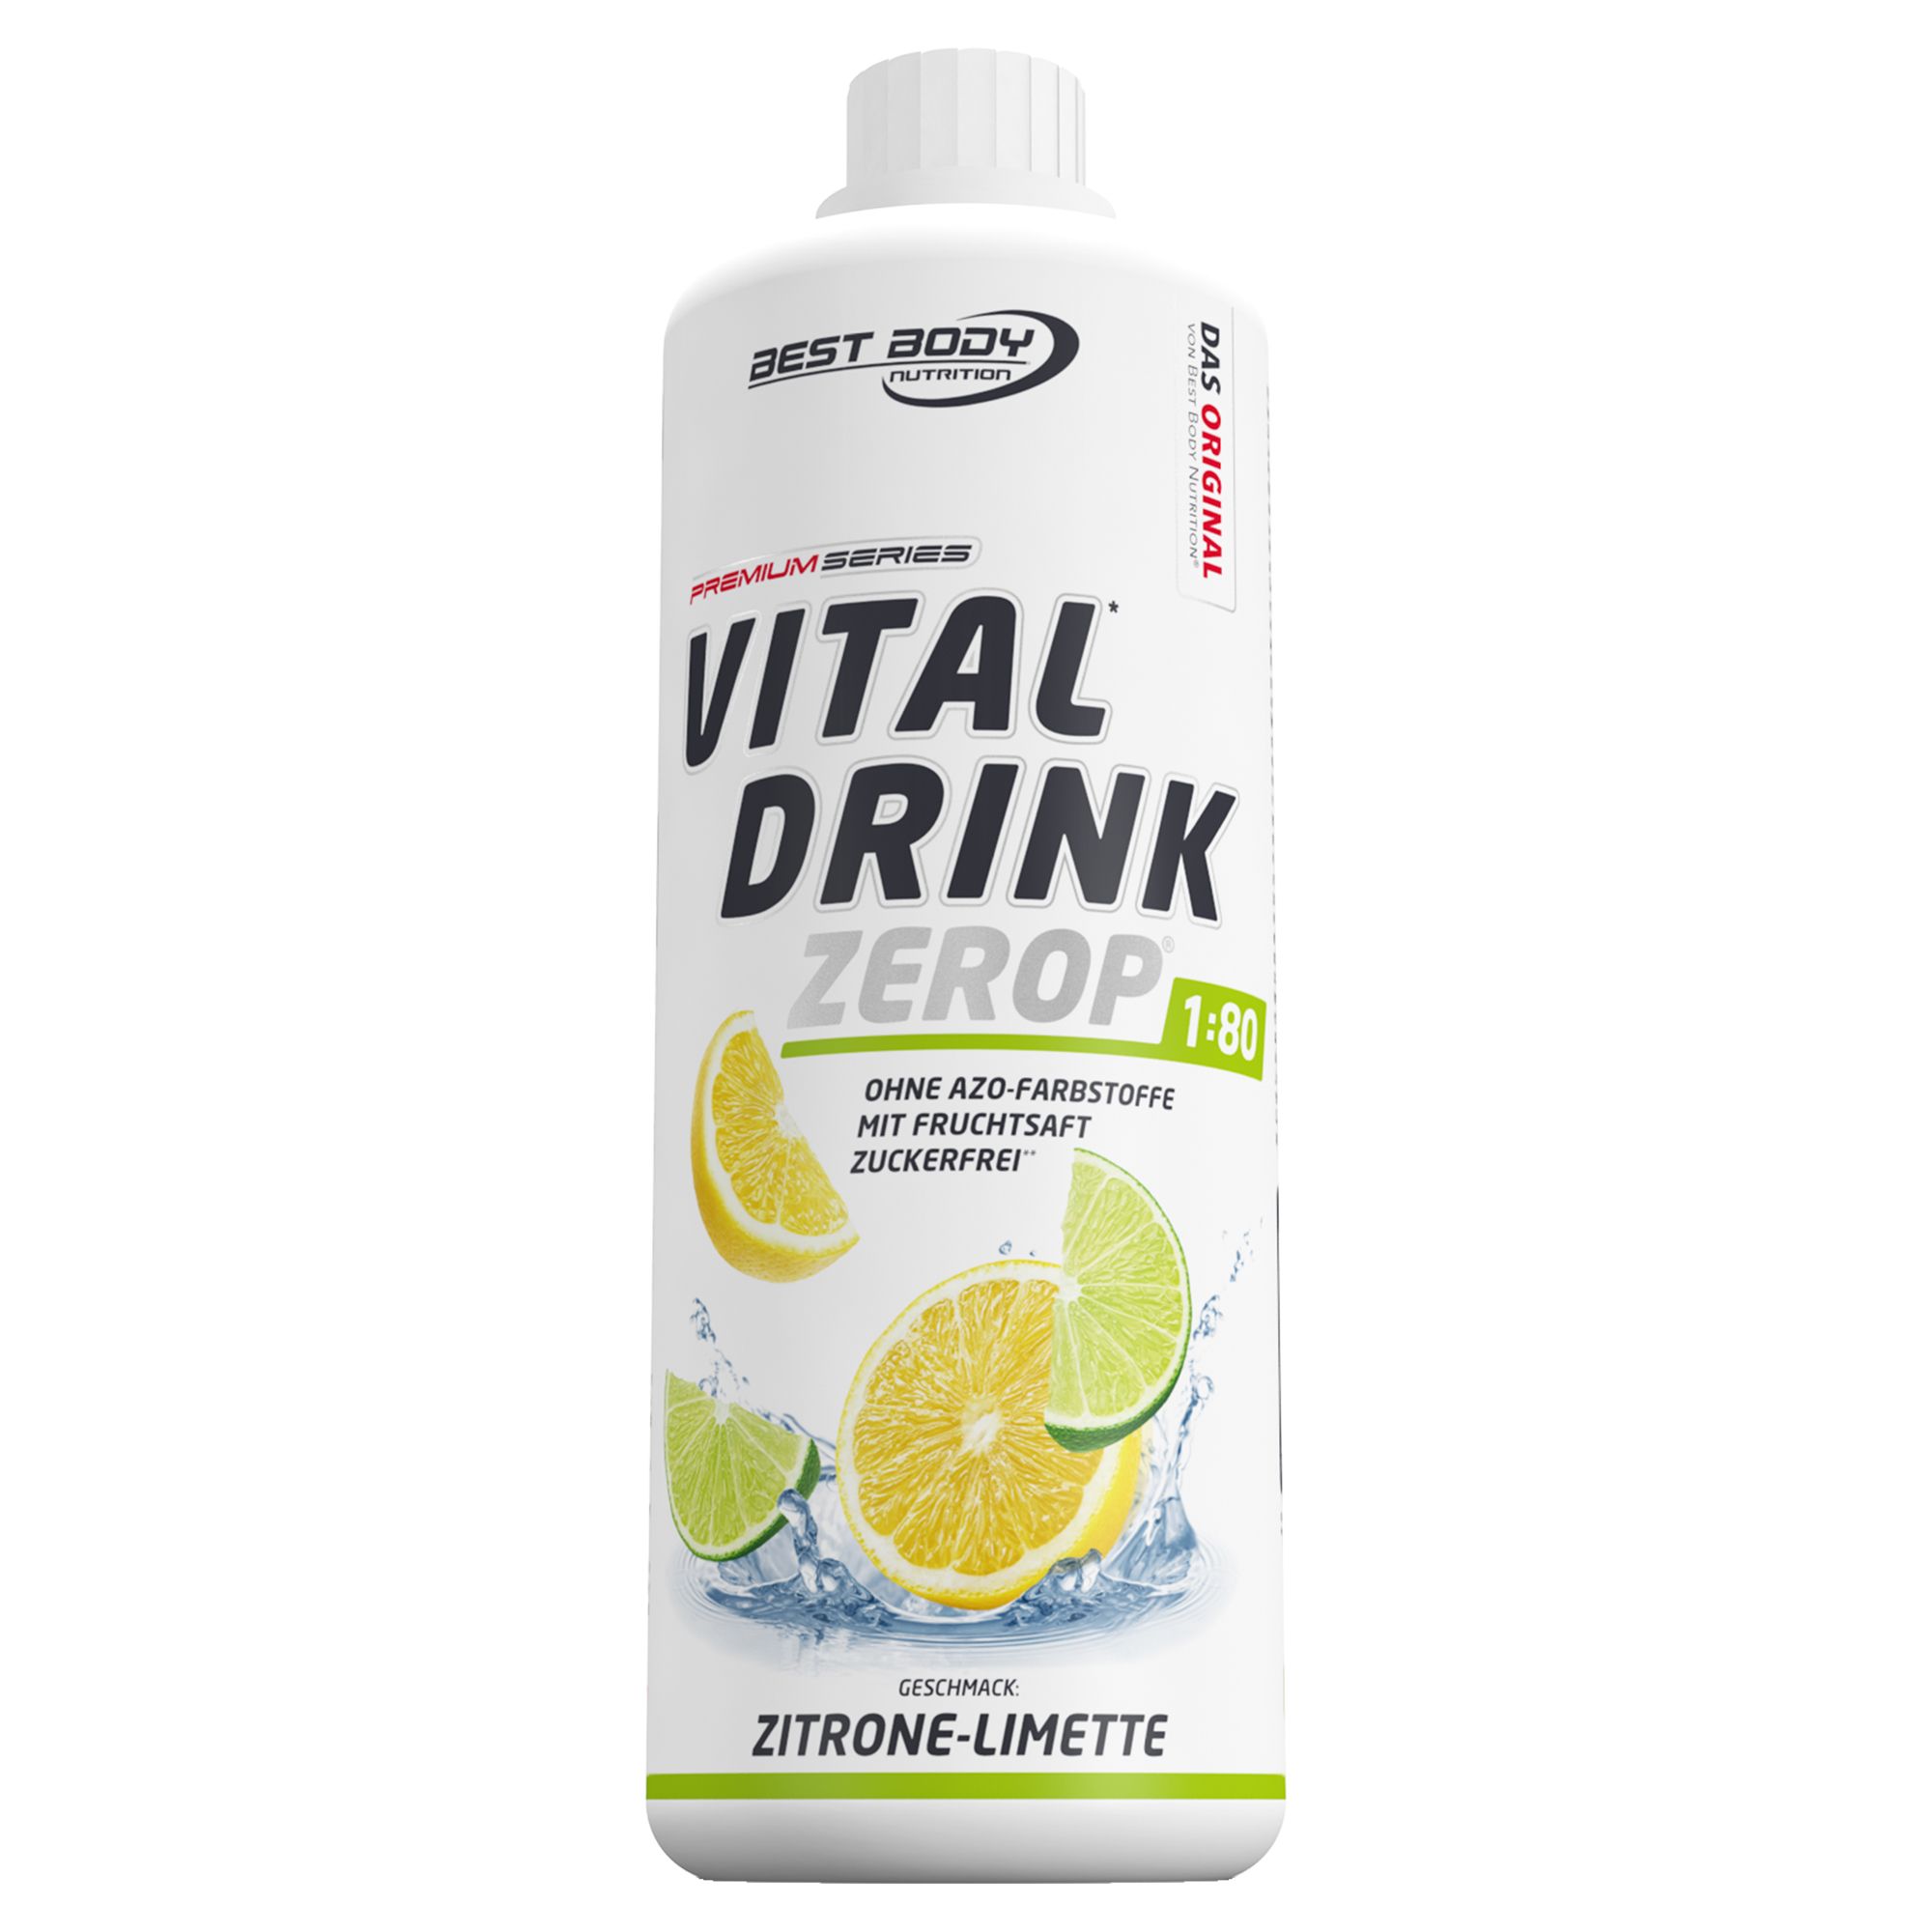 BEST BODY NUTRITION VITAL DRINK ZEROP® ZITRONE LIMETTE 1000 ml